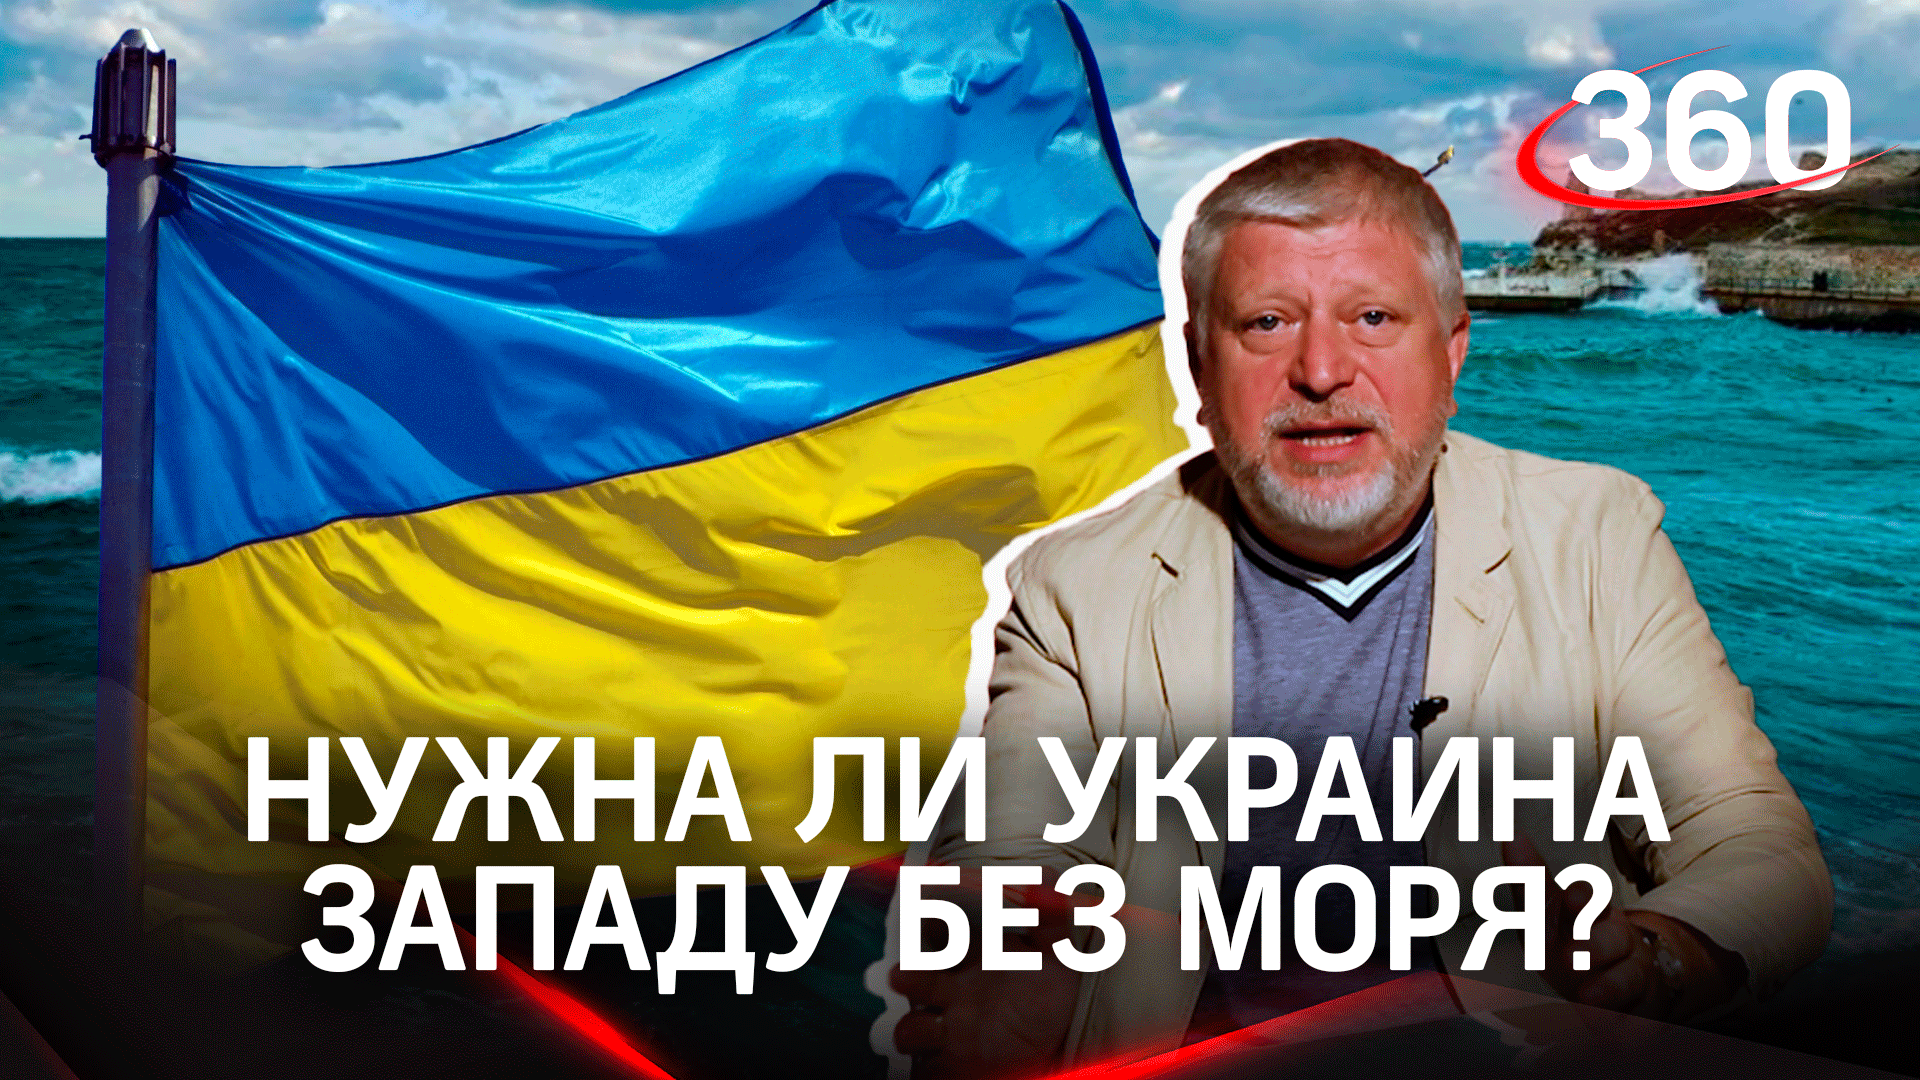 Государство-обрубок: будет ли нужна Украина Западу без Чёрного моря?